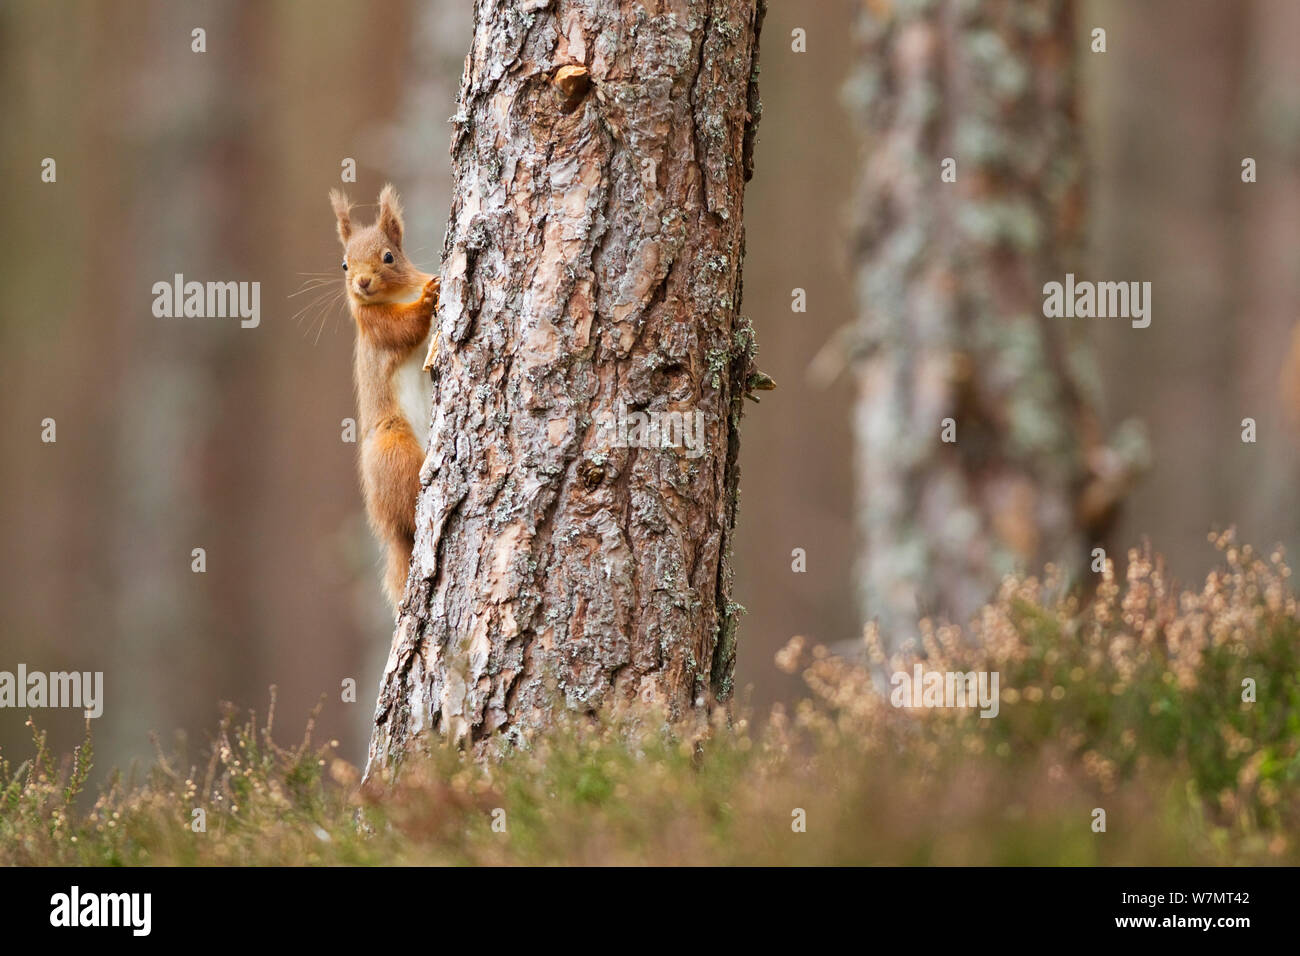 Red scoiattolo (Sciurus vulgaris) slimbing albero in pino silvestre foresta, Cairngorms National Park, Scozia, marzo 2012. Foto Stock